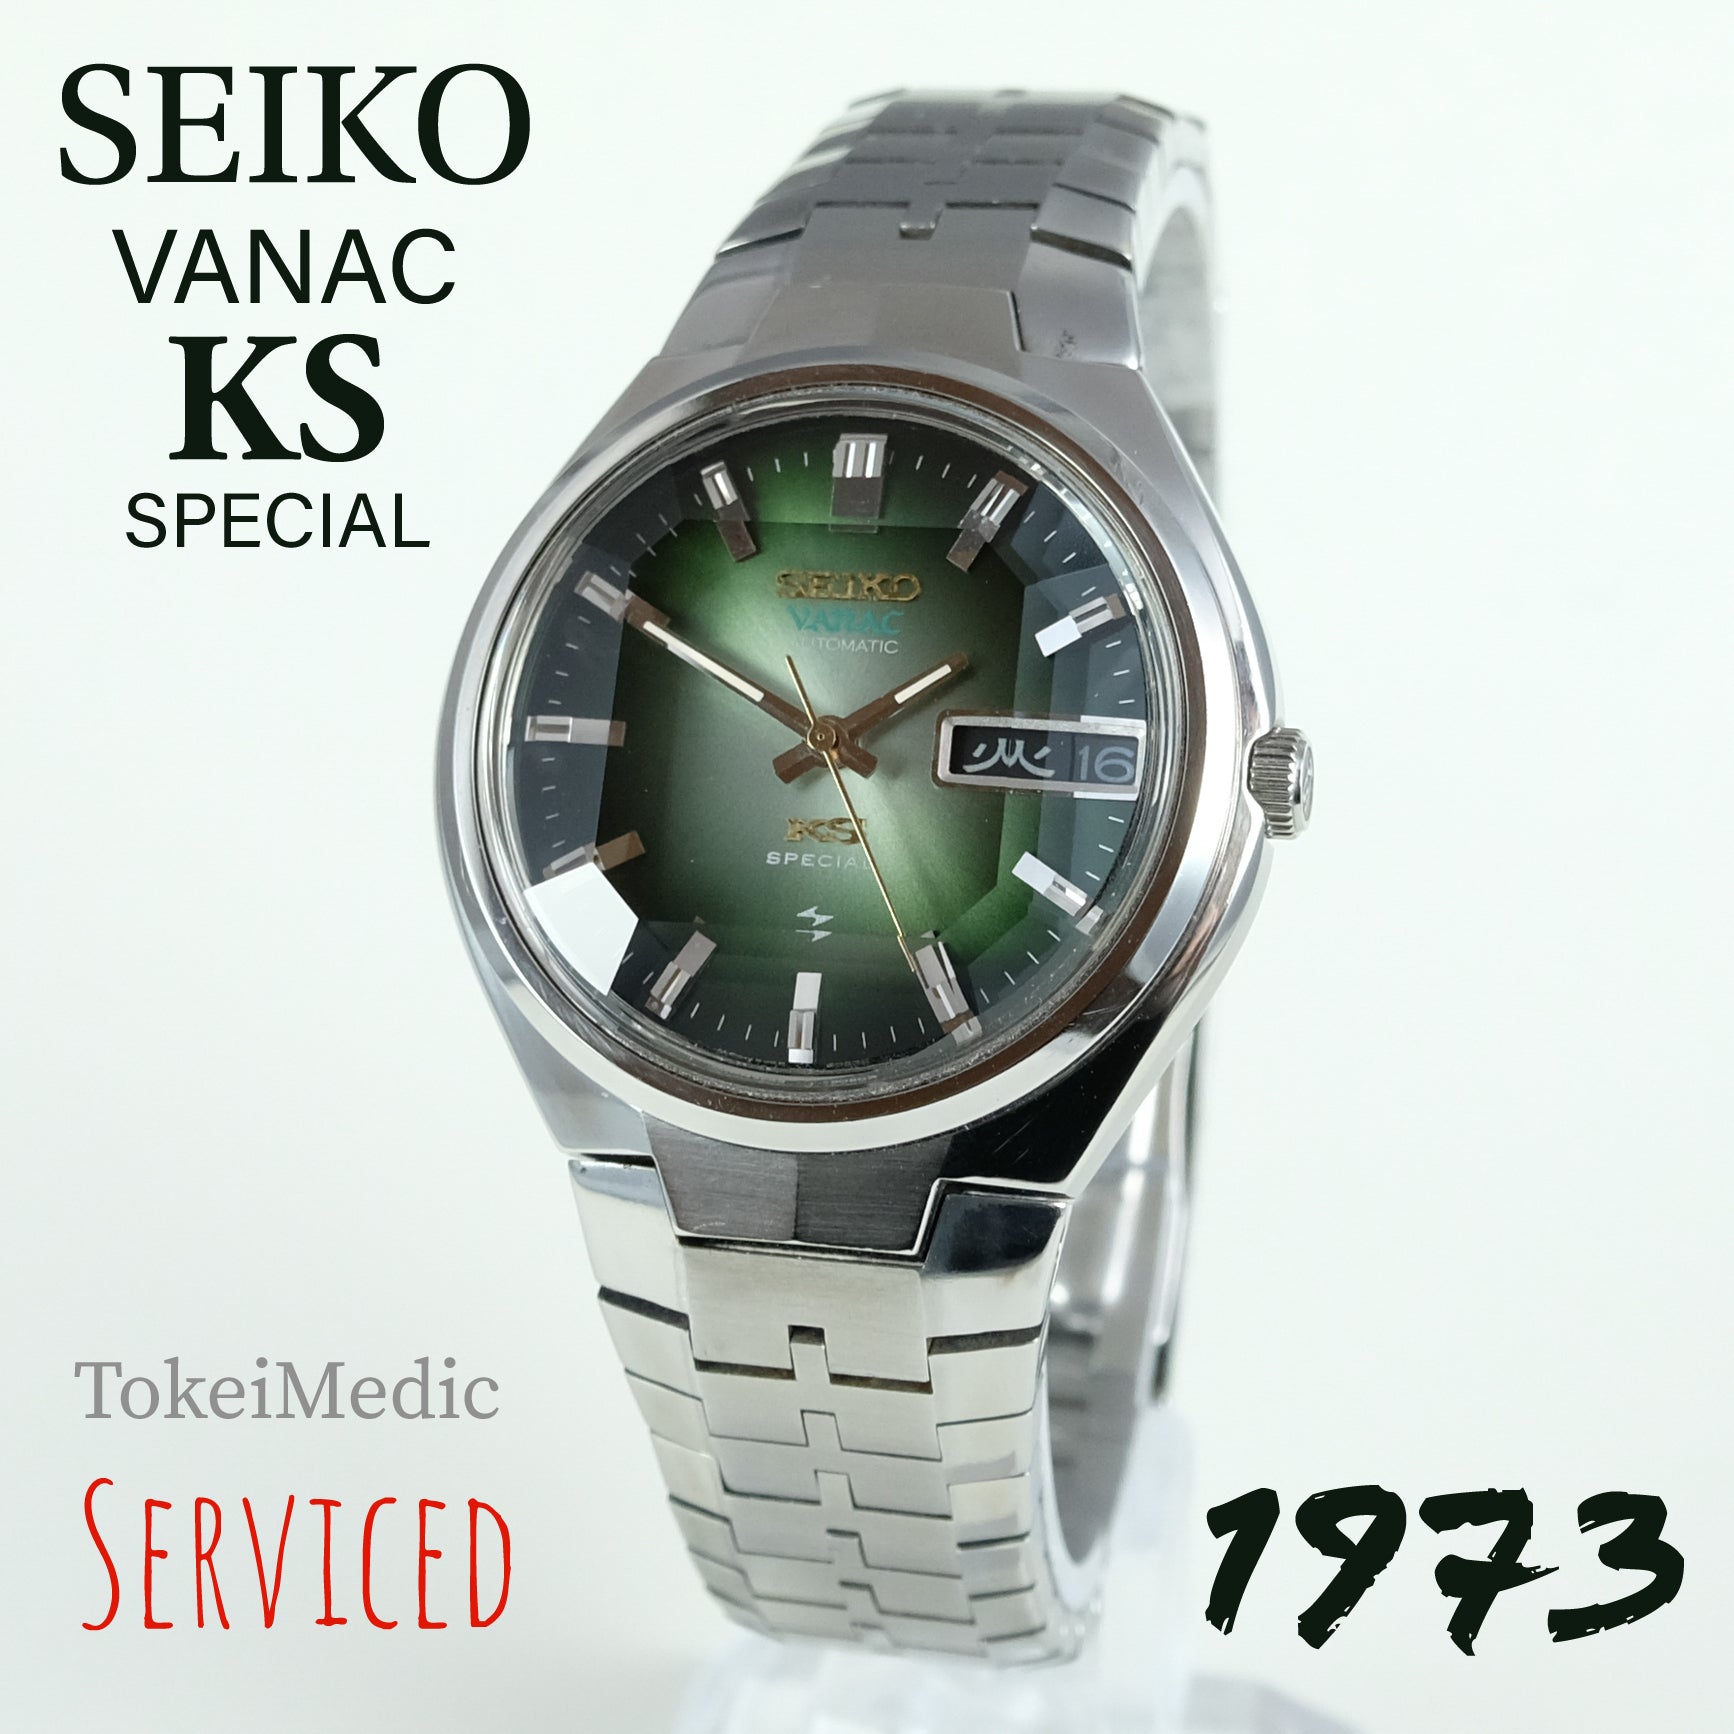 1973 Seiko KS Vanac Special 5246-6051 – TokeiMedic